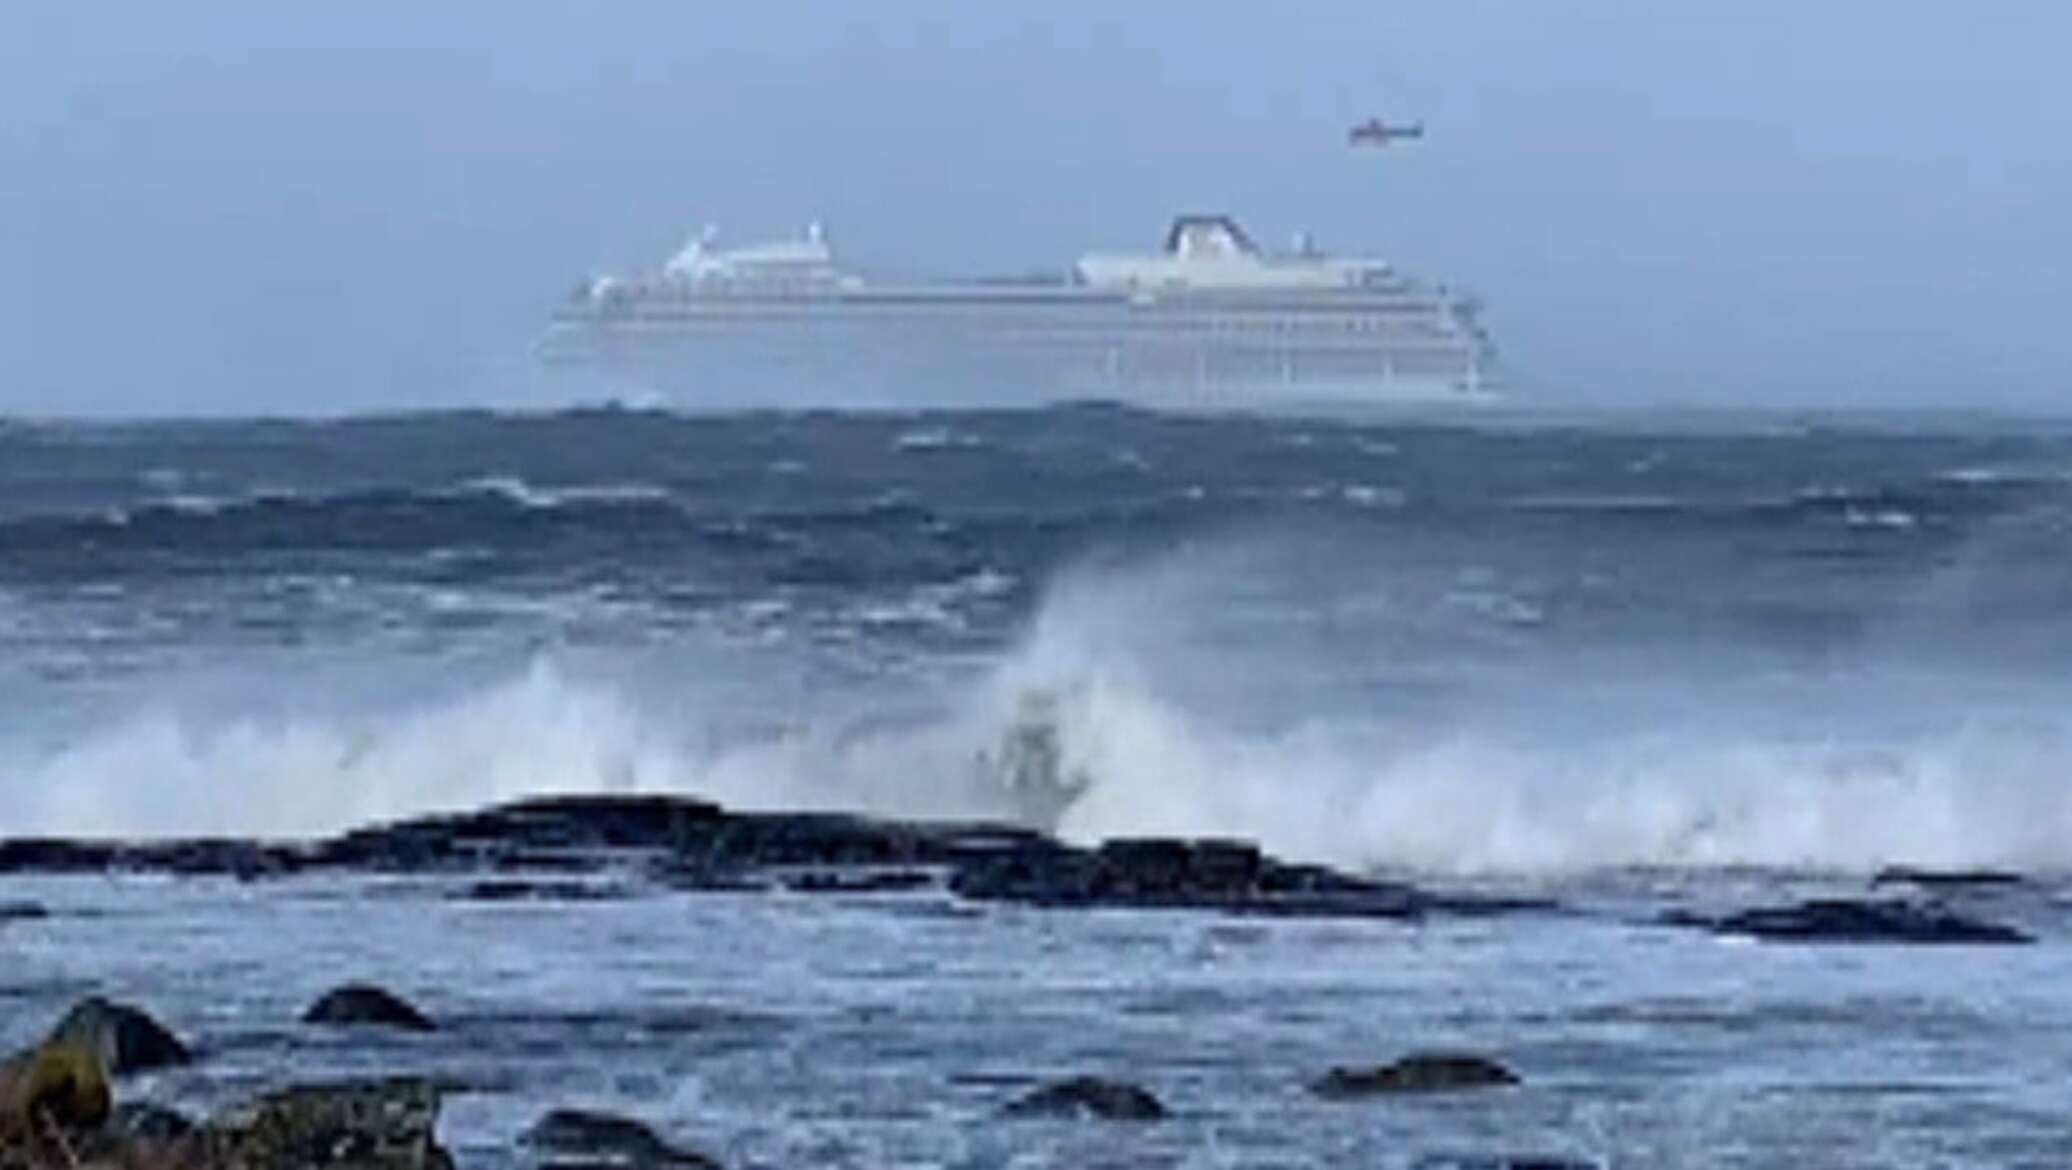 Терпящий бедствие дремлет. Круизный лайнер попал в сильный шторм. Цвет моря у берегов Норвегии. Лайнер Викинг икспр 2018. Замёрзший Фьорд с кораблями.